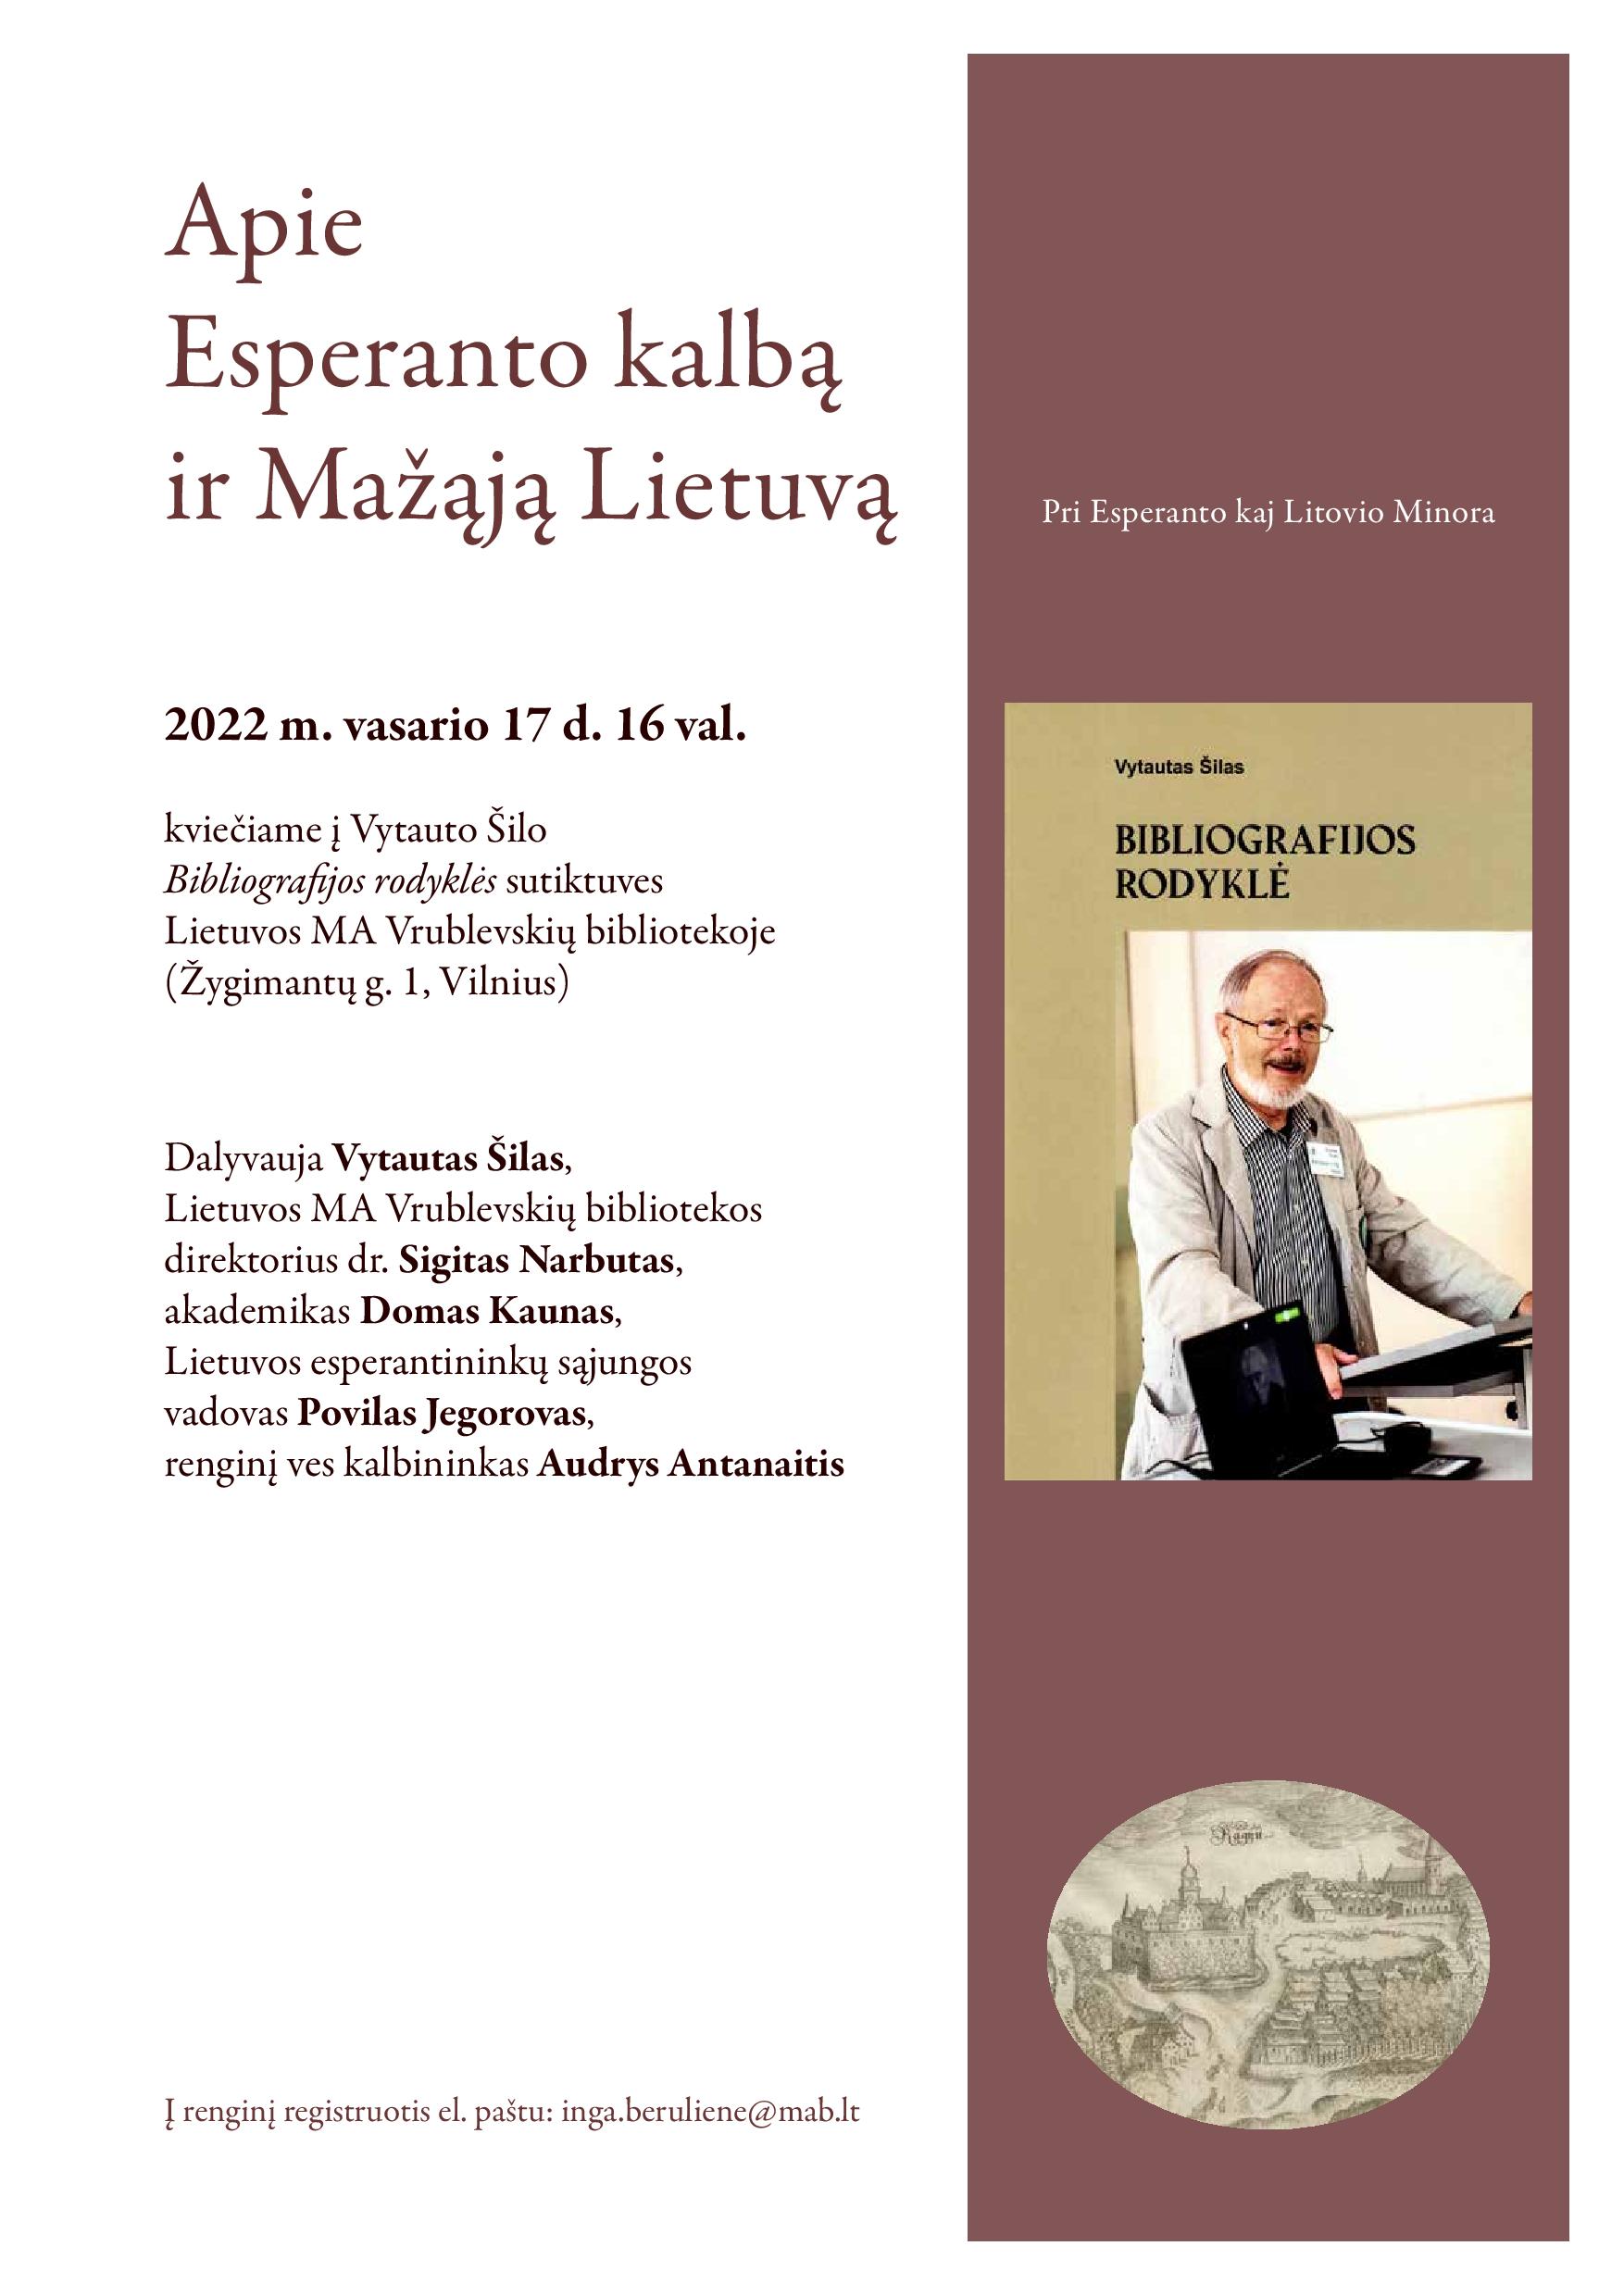 LMA Vrublevskių bibliotekoje bus pristatoma Vytauto Šilo išleista „Bibliografijos rodyklė“. Kviečiame!